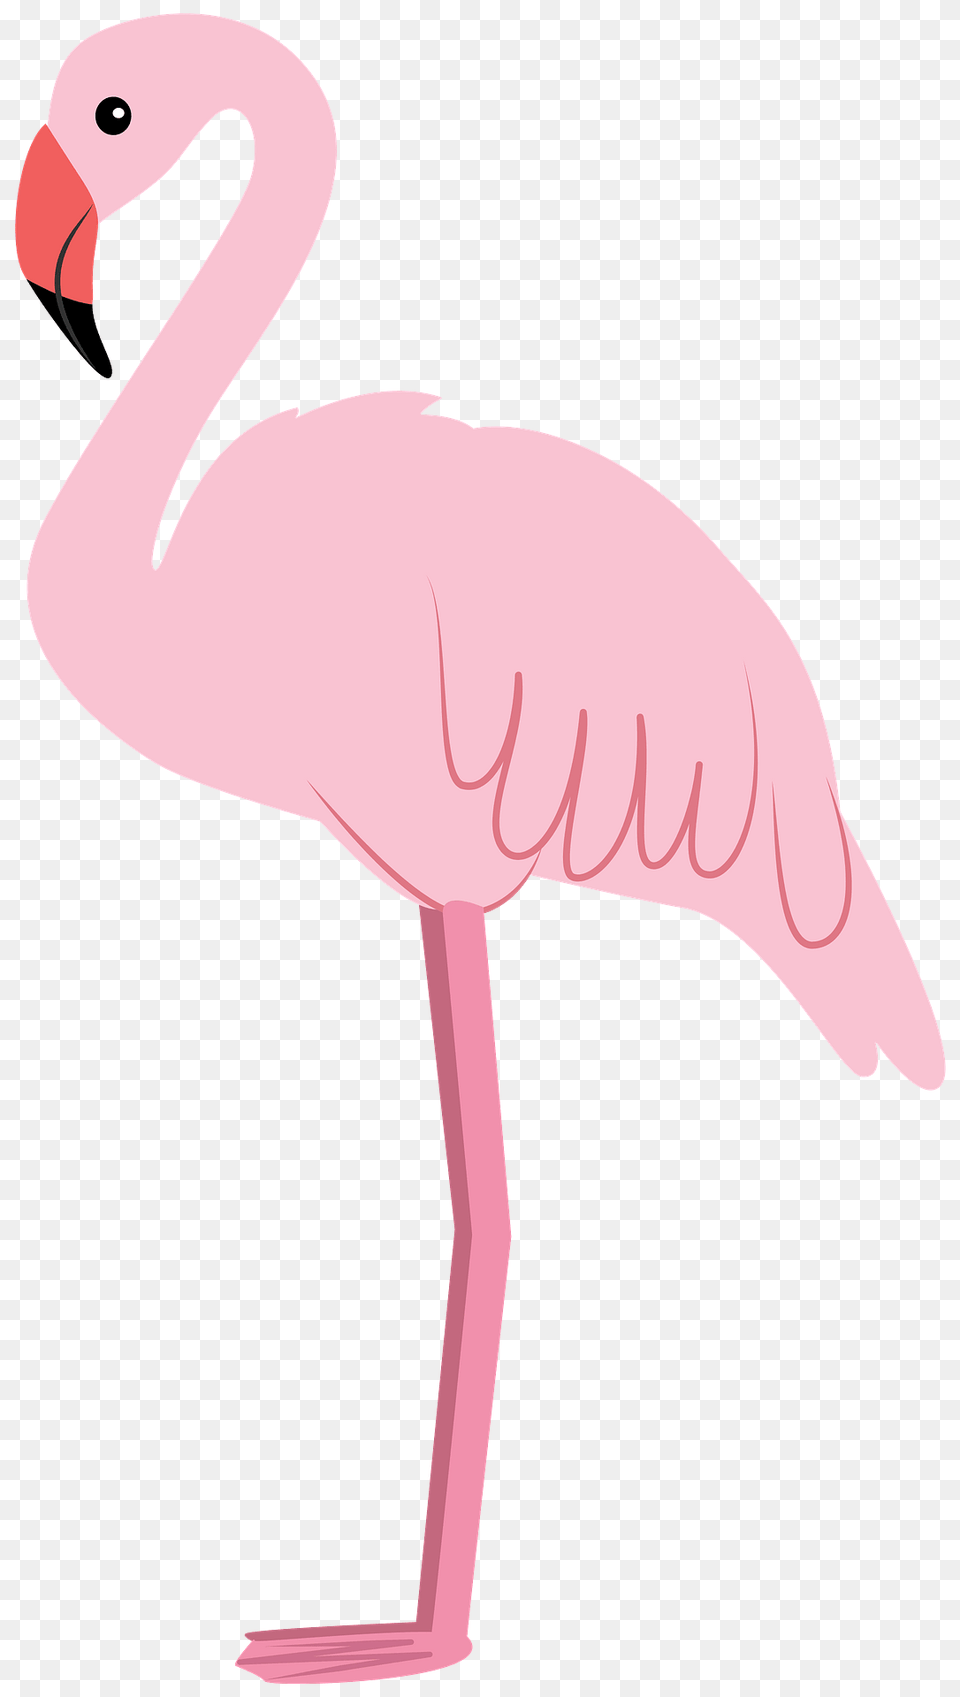 Flamingo Clipart, Animal, Bird, Fish, Sea Life Free Transparent Png